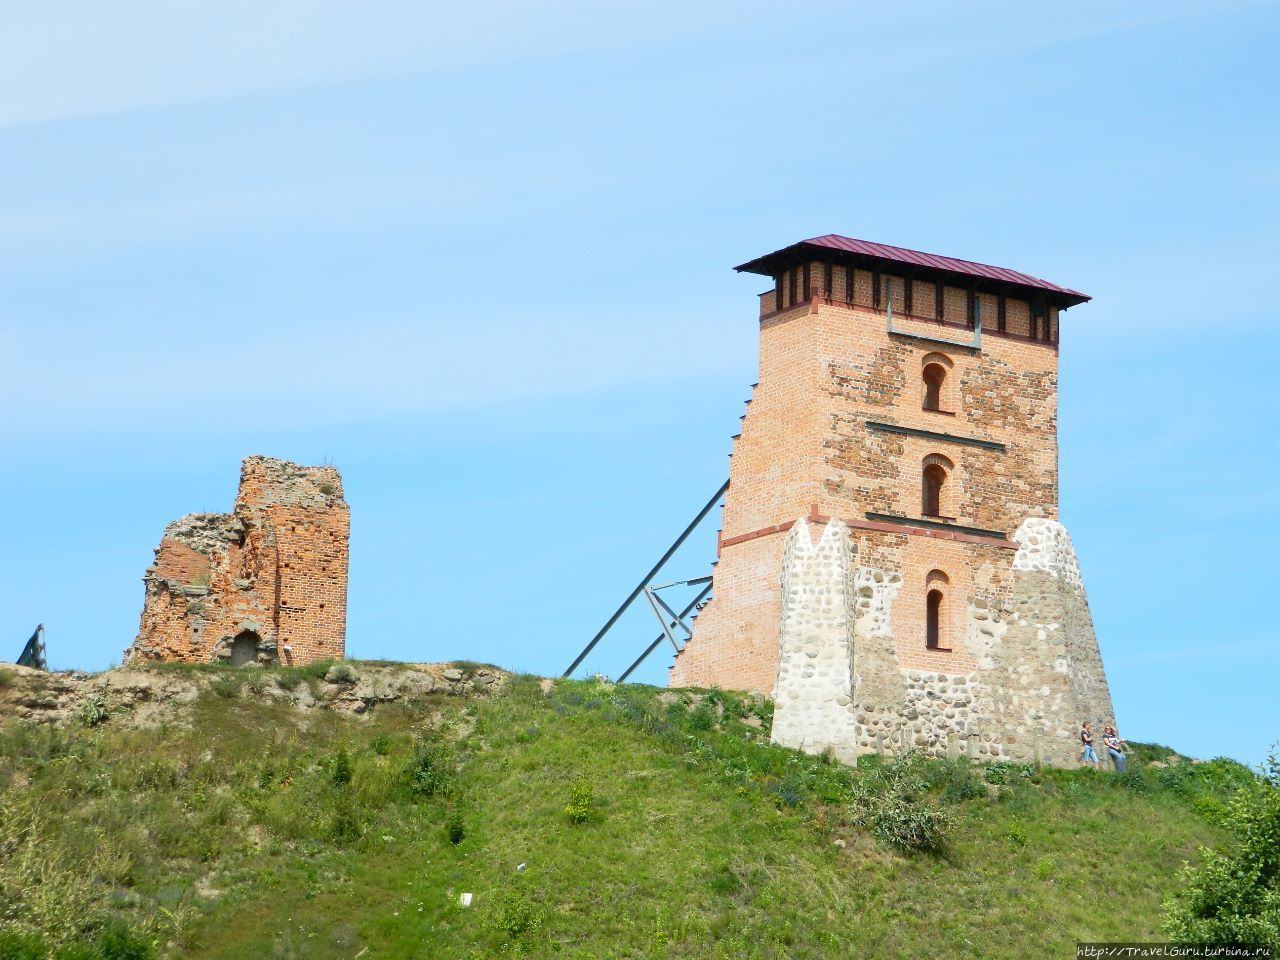 Остатки башен Новогрудского замка, где мог короноваться Миндовг, объединитель литовских и белорусских земель Навагрудак, Беларусь